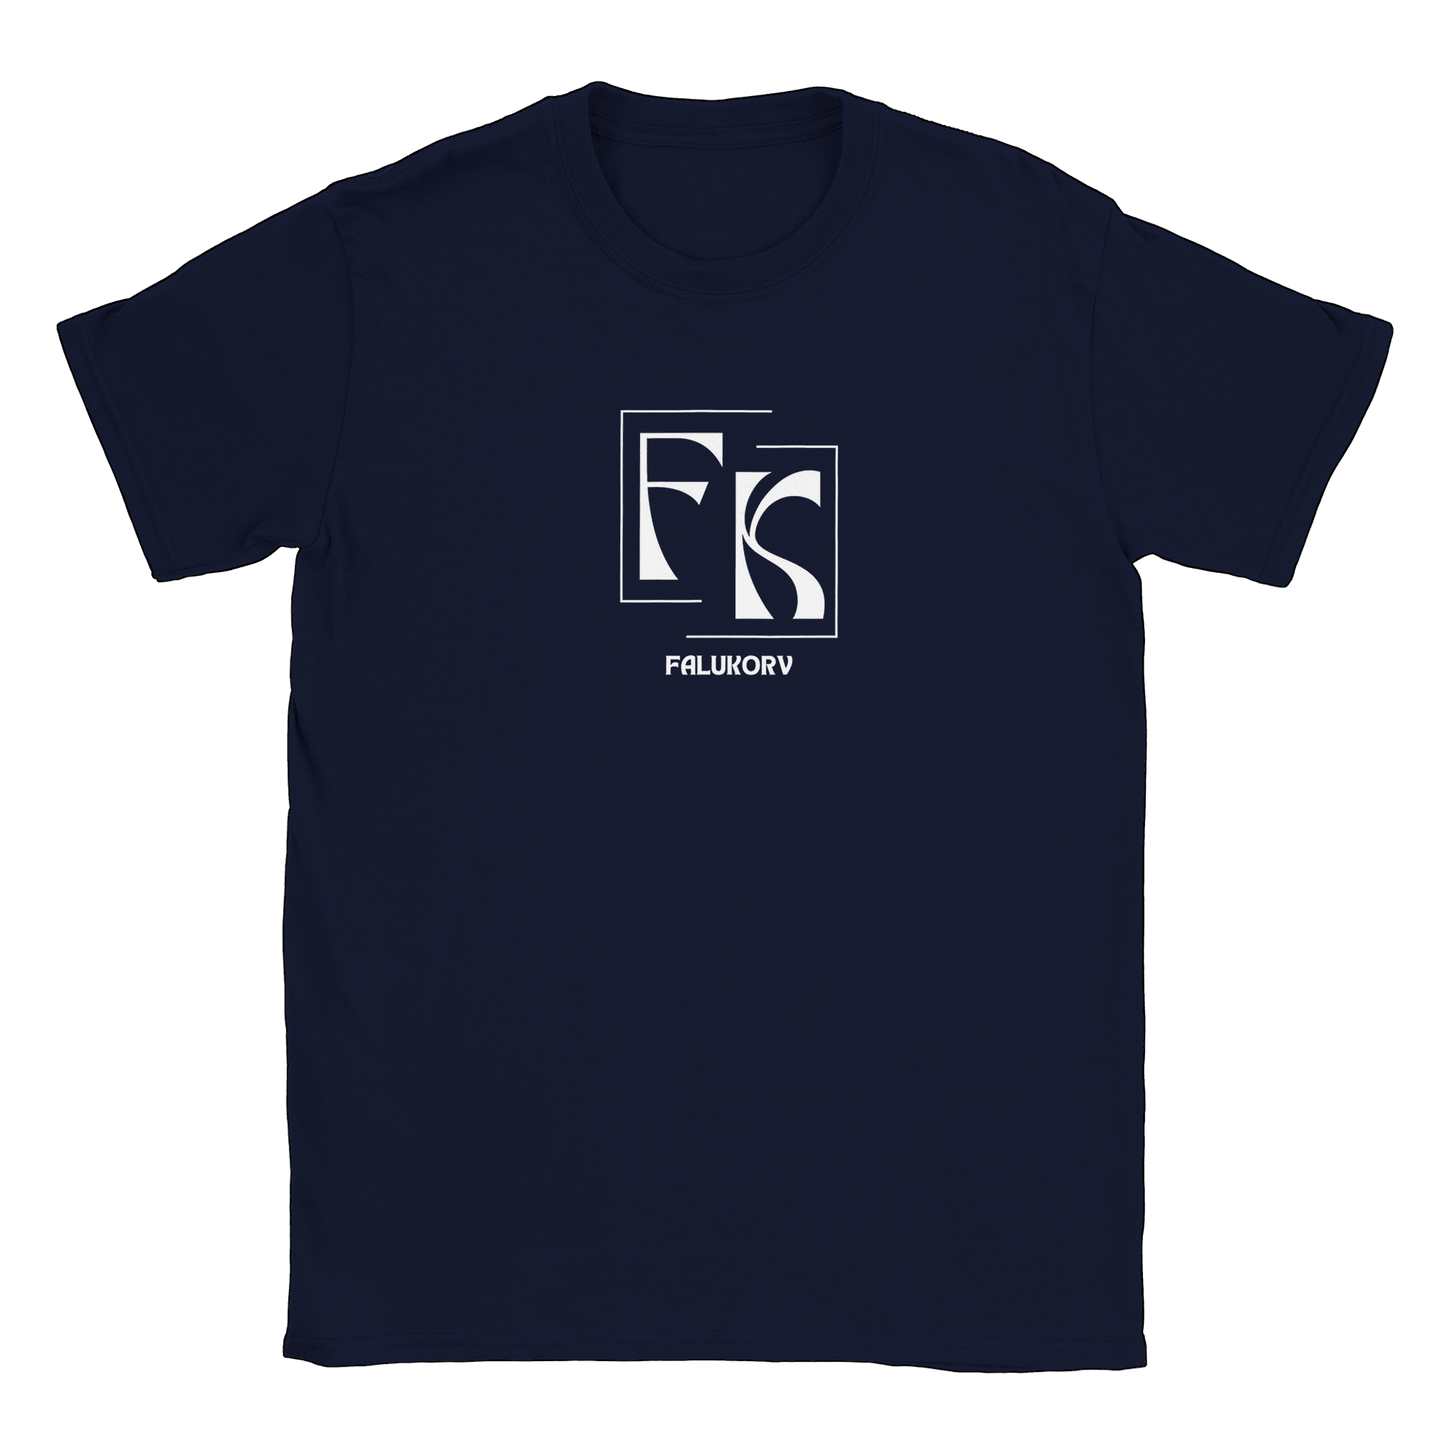 Falukorv - T-shirt Navy